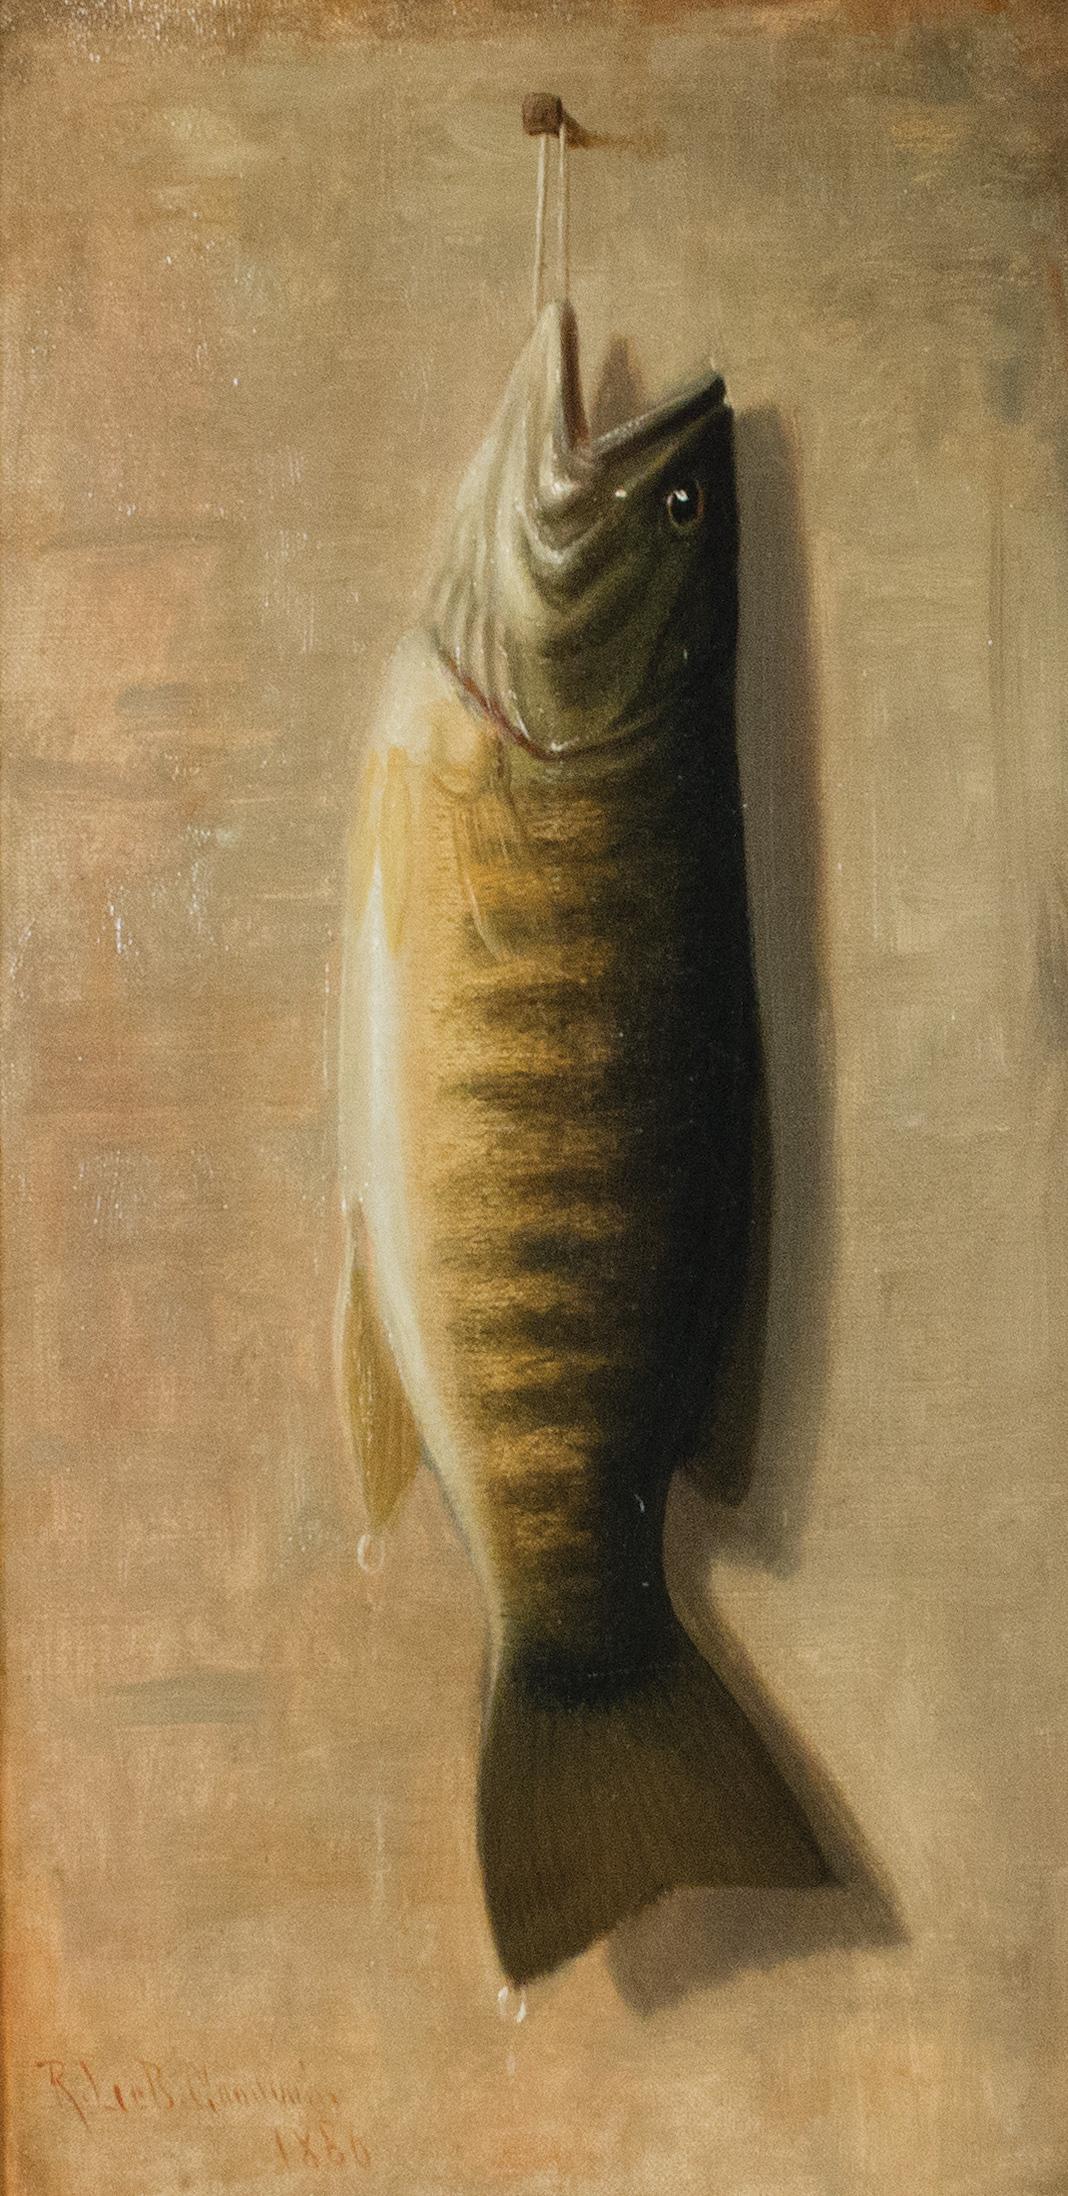 Trophäenfisch von Upstate New York Künstler Richard Goodwin, 1860 – Painting von Richard Labarre Goodwin